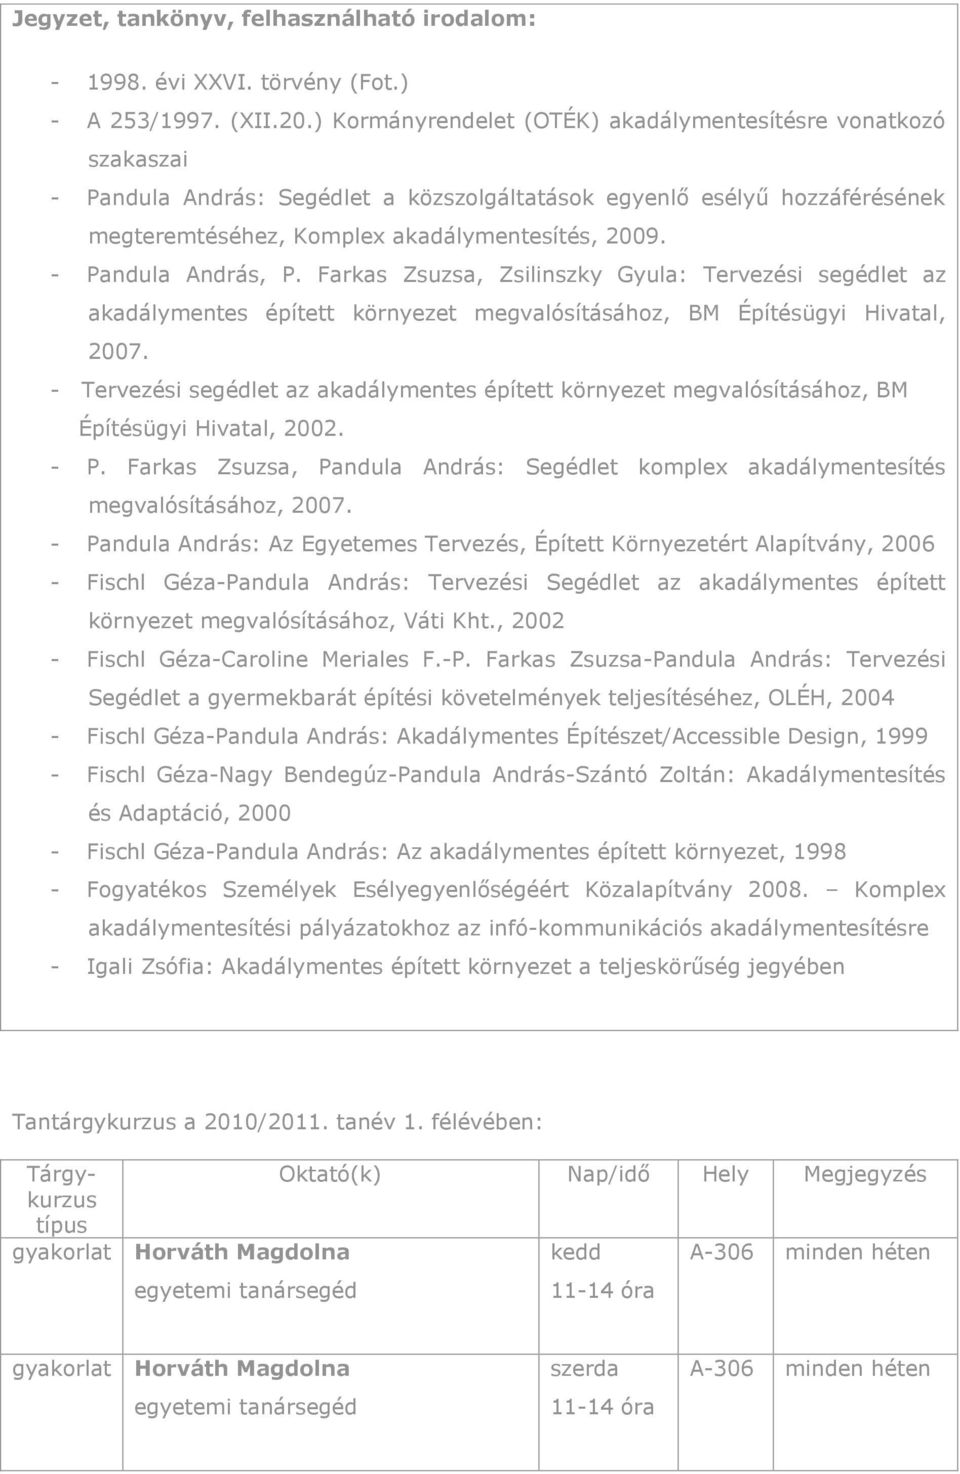 - Pandula András, P. Farkas Zsuzsa, Zsilinszky Gyula: Tervezési segédlet az akadálymentes épített környezet megvalósításához, BM Építésügyi Hivatal, 2007.